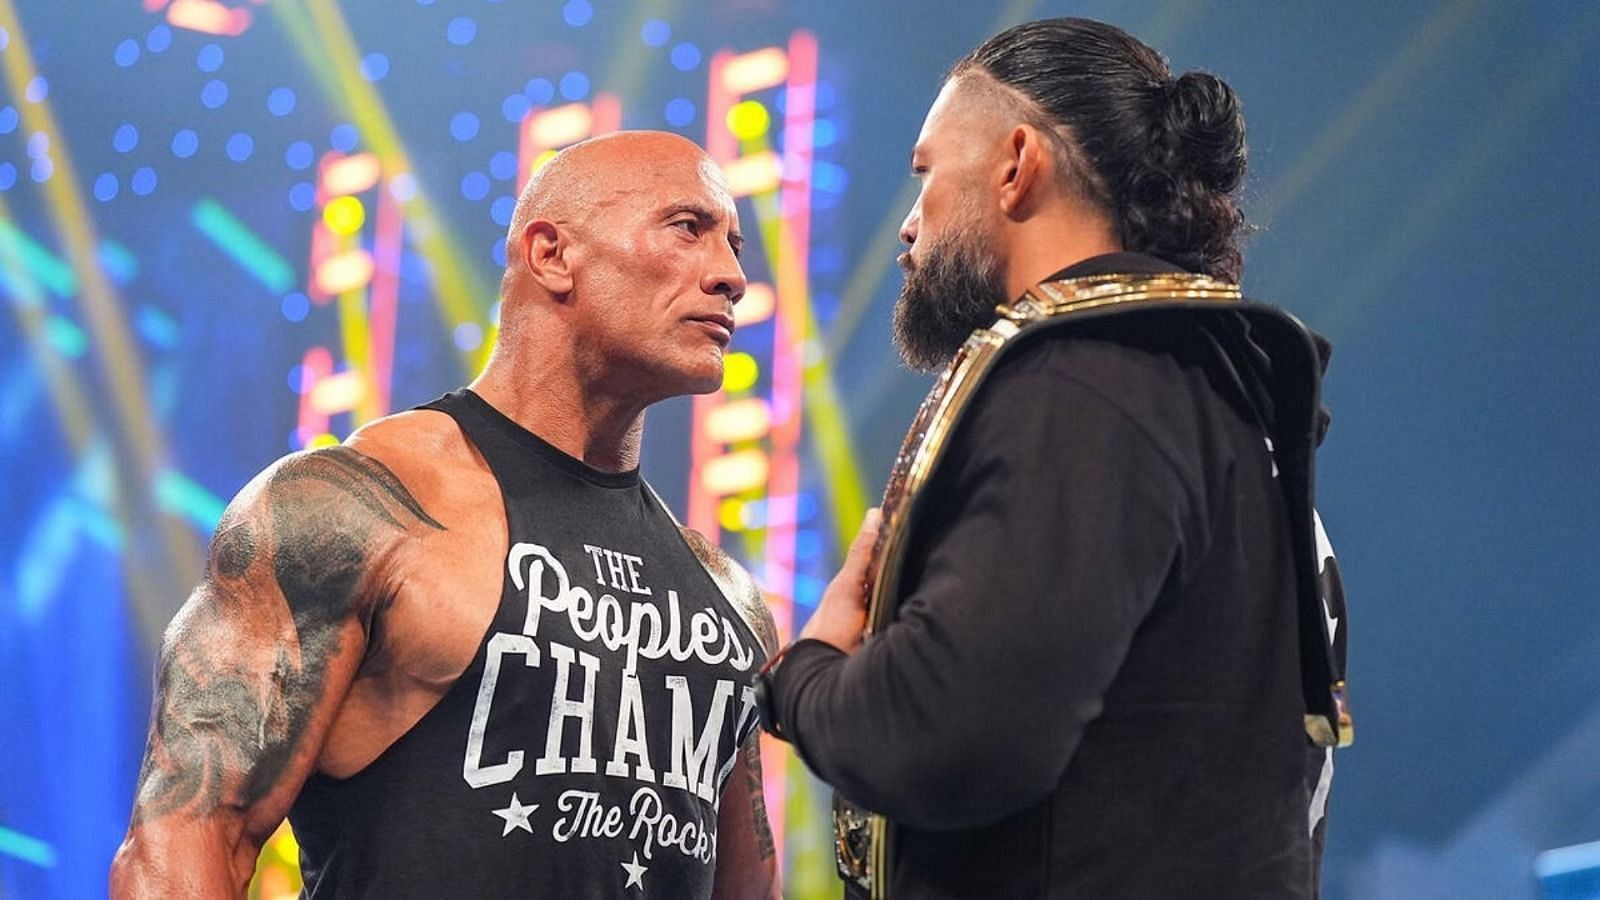 द रॉक और रोमन रेंस के बीच मैच को WWE फैंस काफी ज्यादा उत्साहित थे